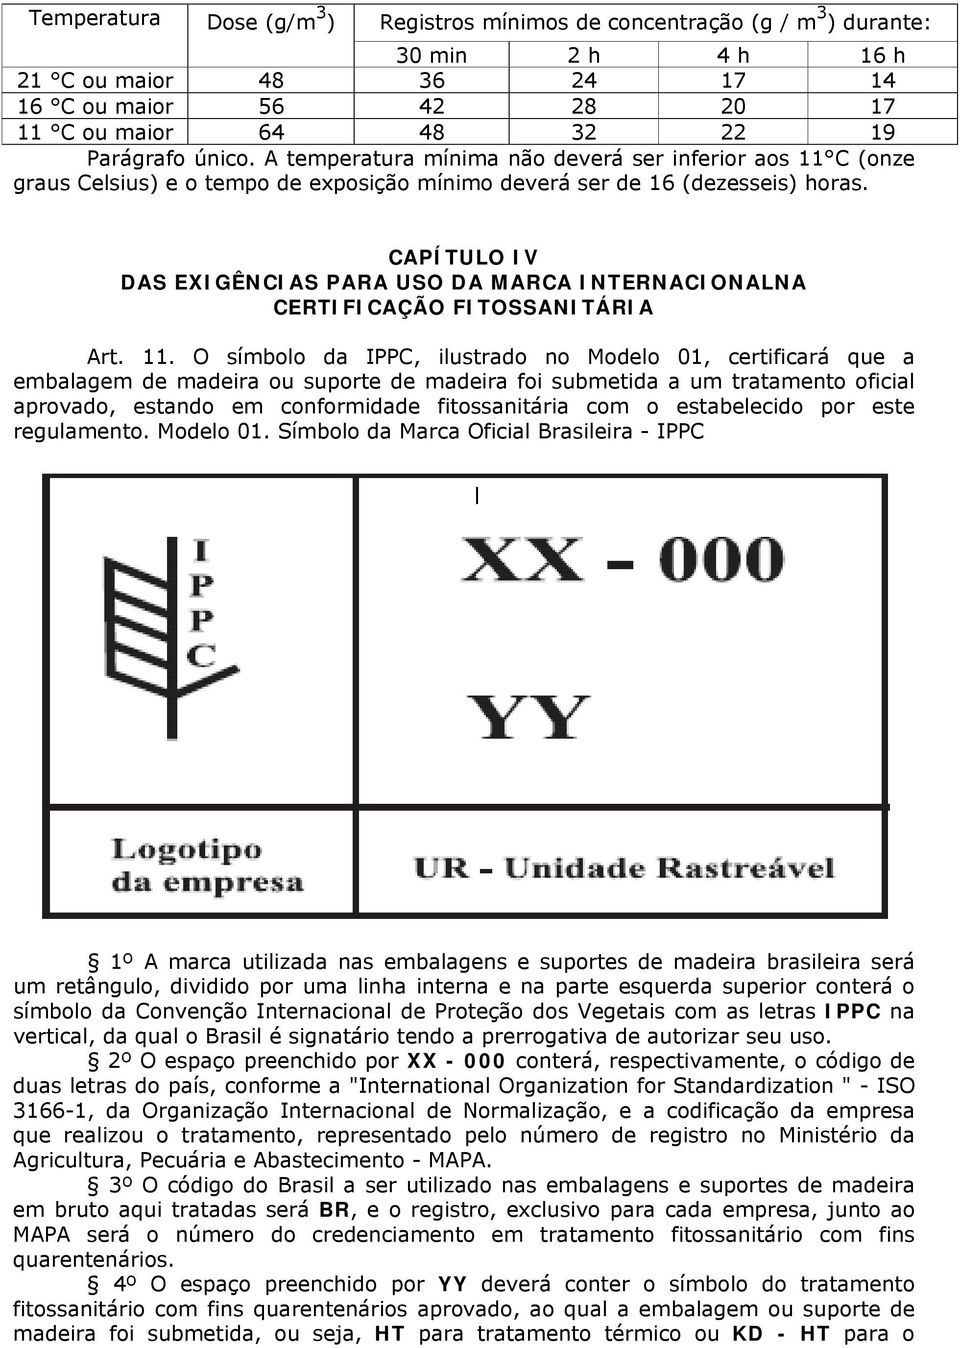 CAPÍTULO IV DAS EXIGÊNCIAS PARA USO DA MARCA INTERNACIONALNA CERTIFICAÇÃO FITOSSANITÁRIA Art. 11.